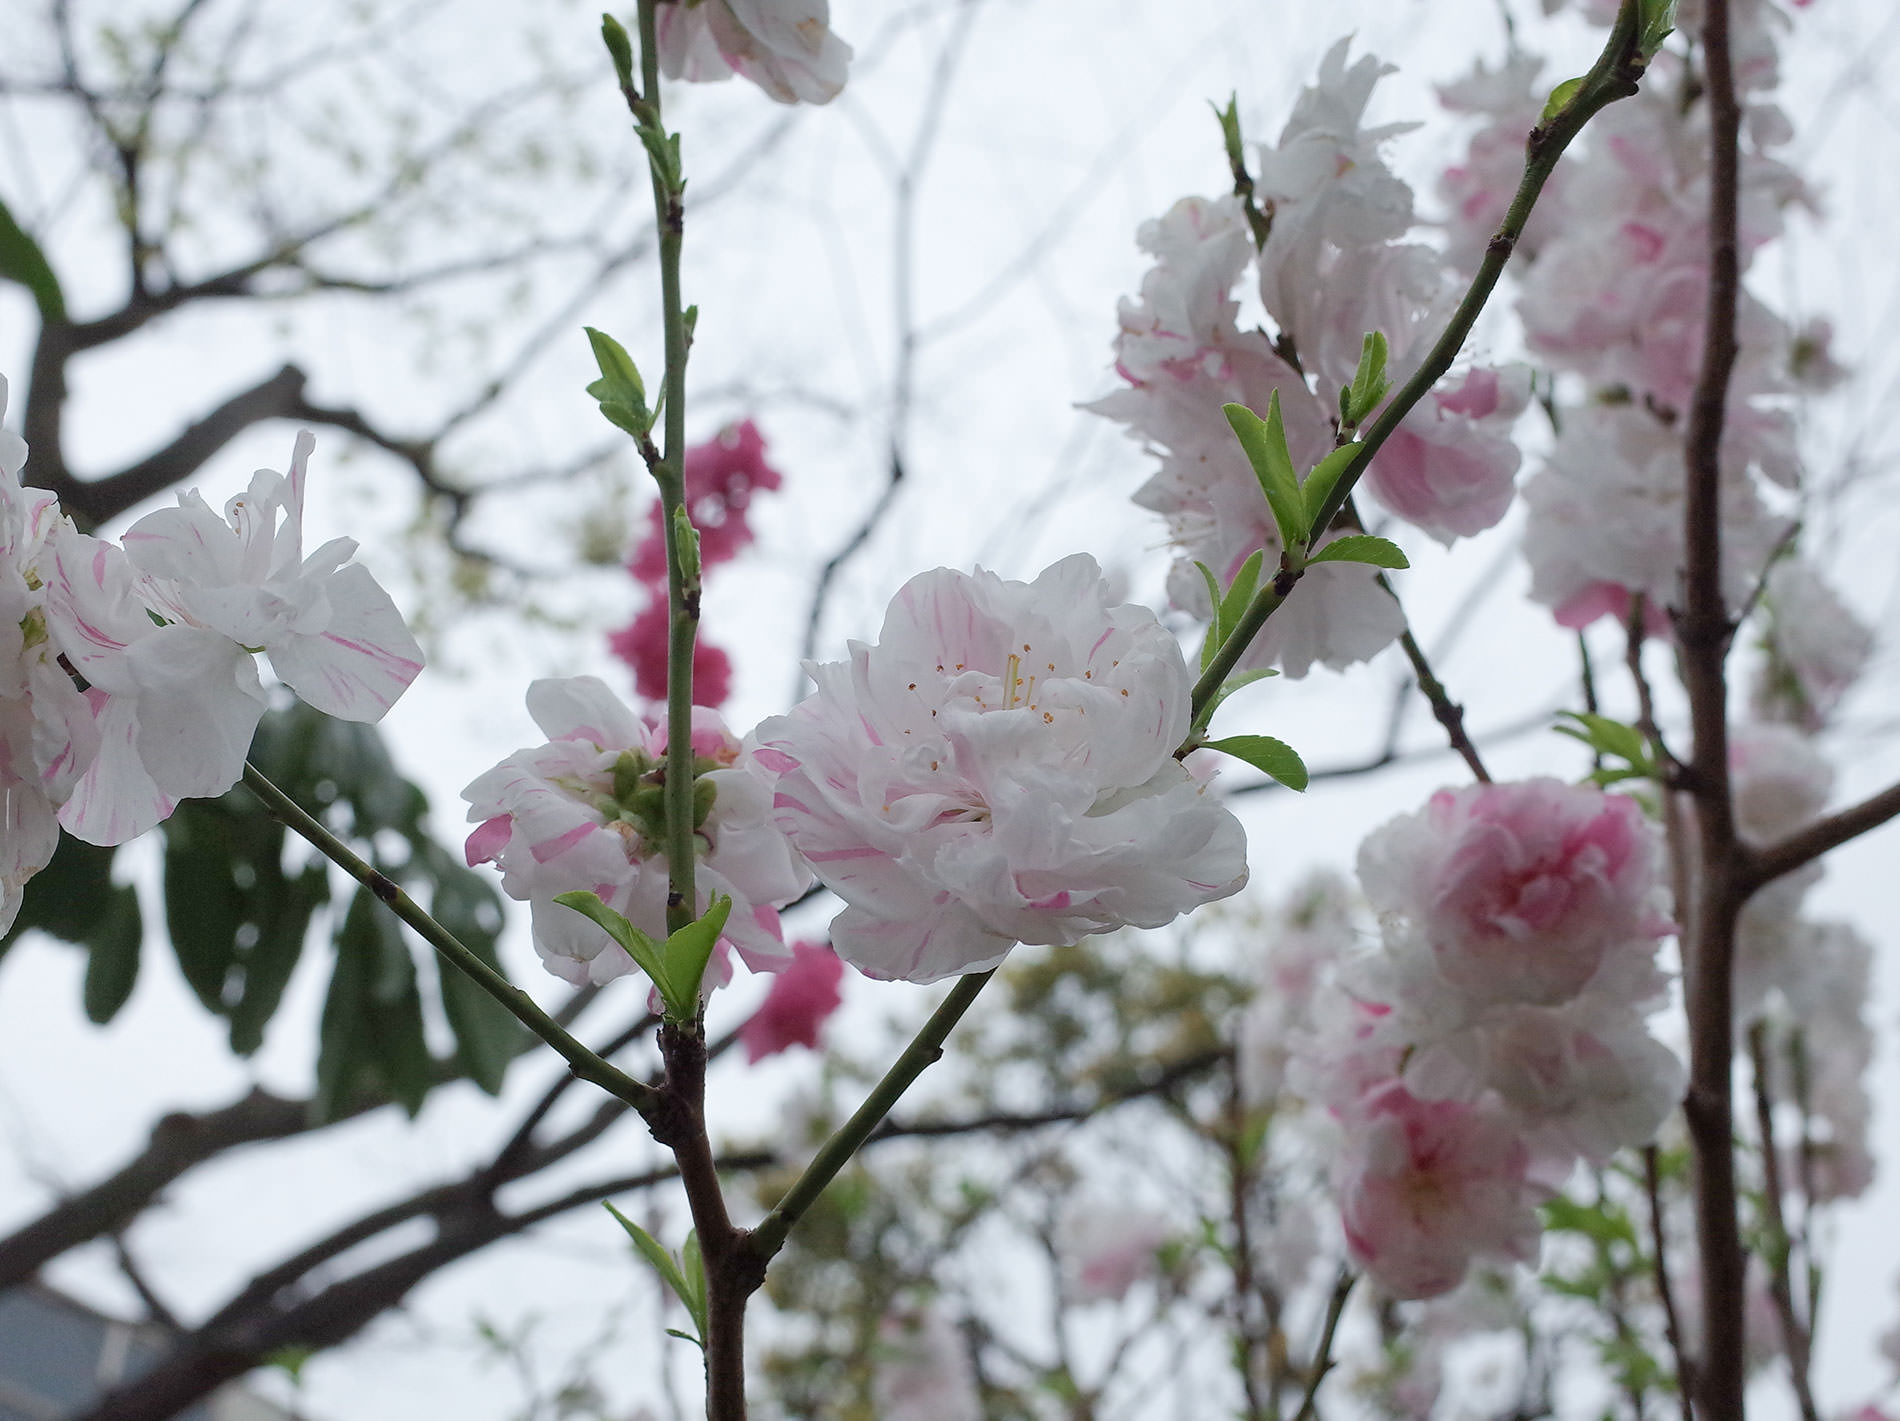 桜 2020 / Cherry Blossom Shibuya Tokyo 2020